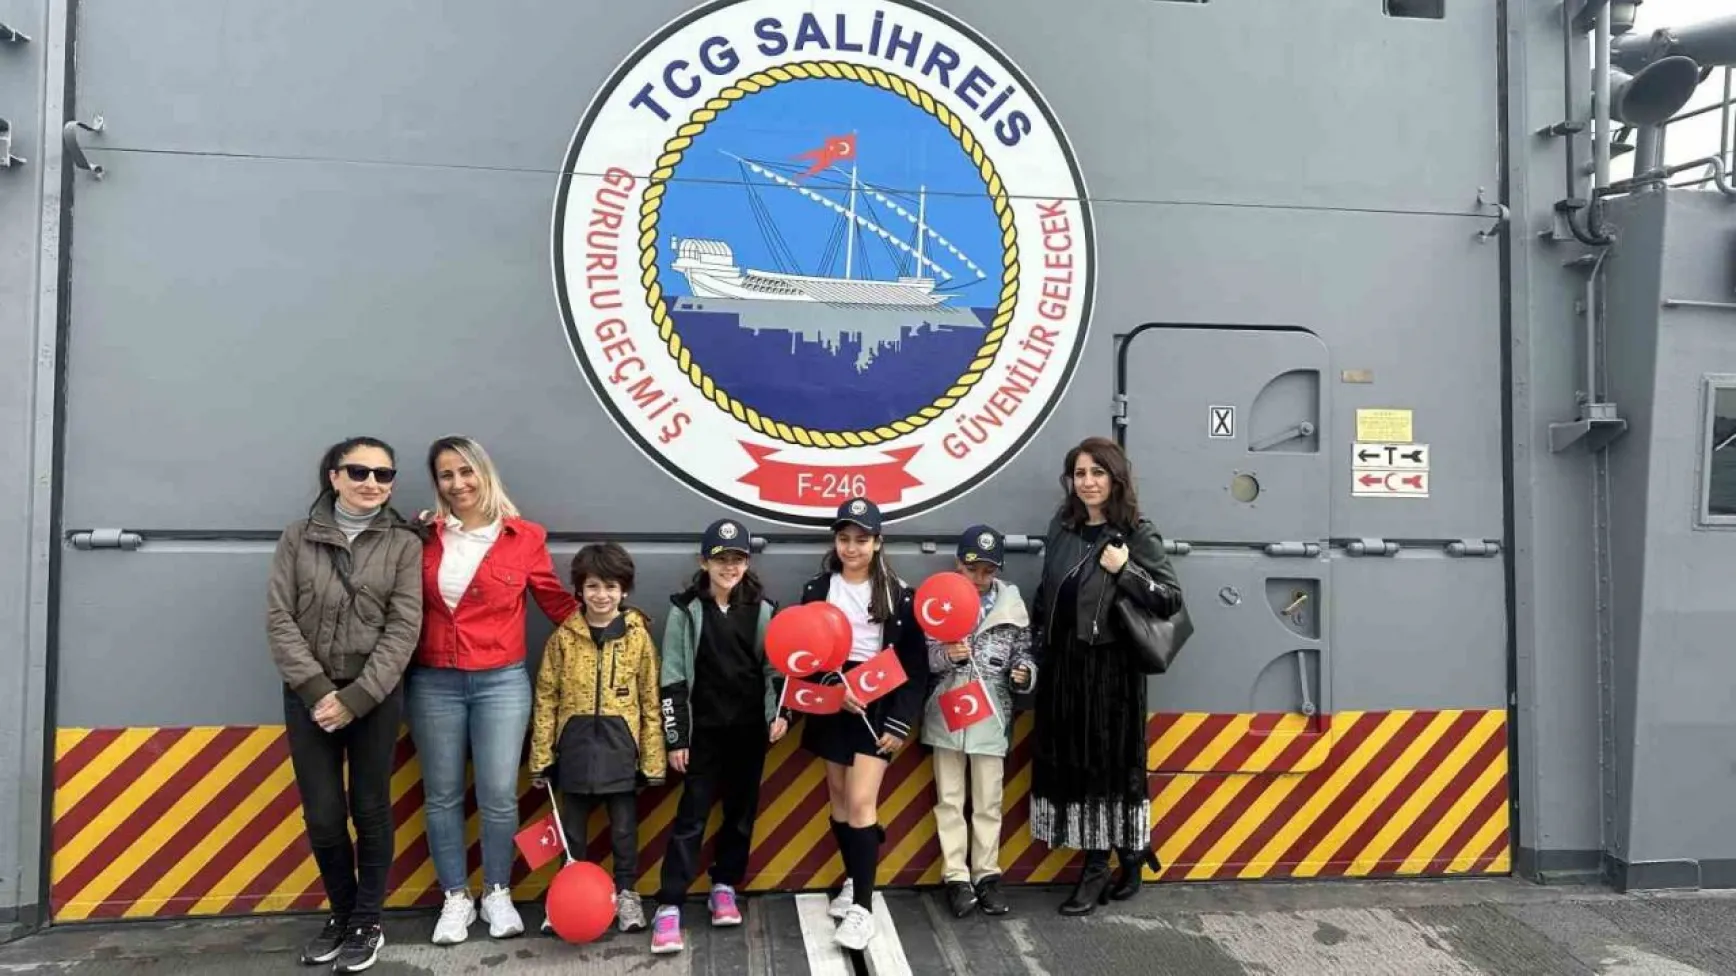 TCG Salihreis Fırkateyni 23 Nisan dolayısıyla İstanbul'da ziyarete açıldı